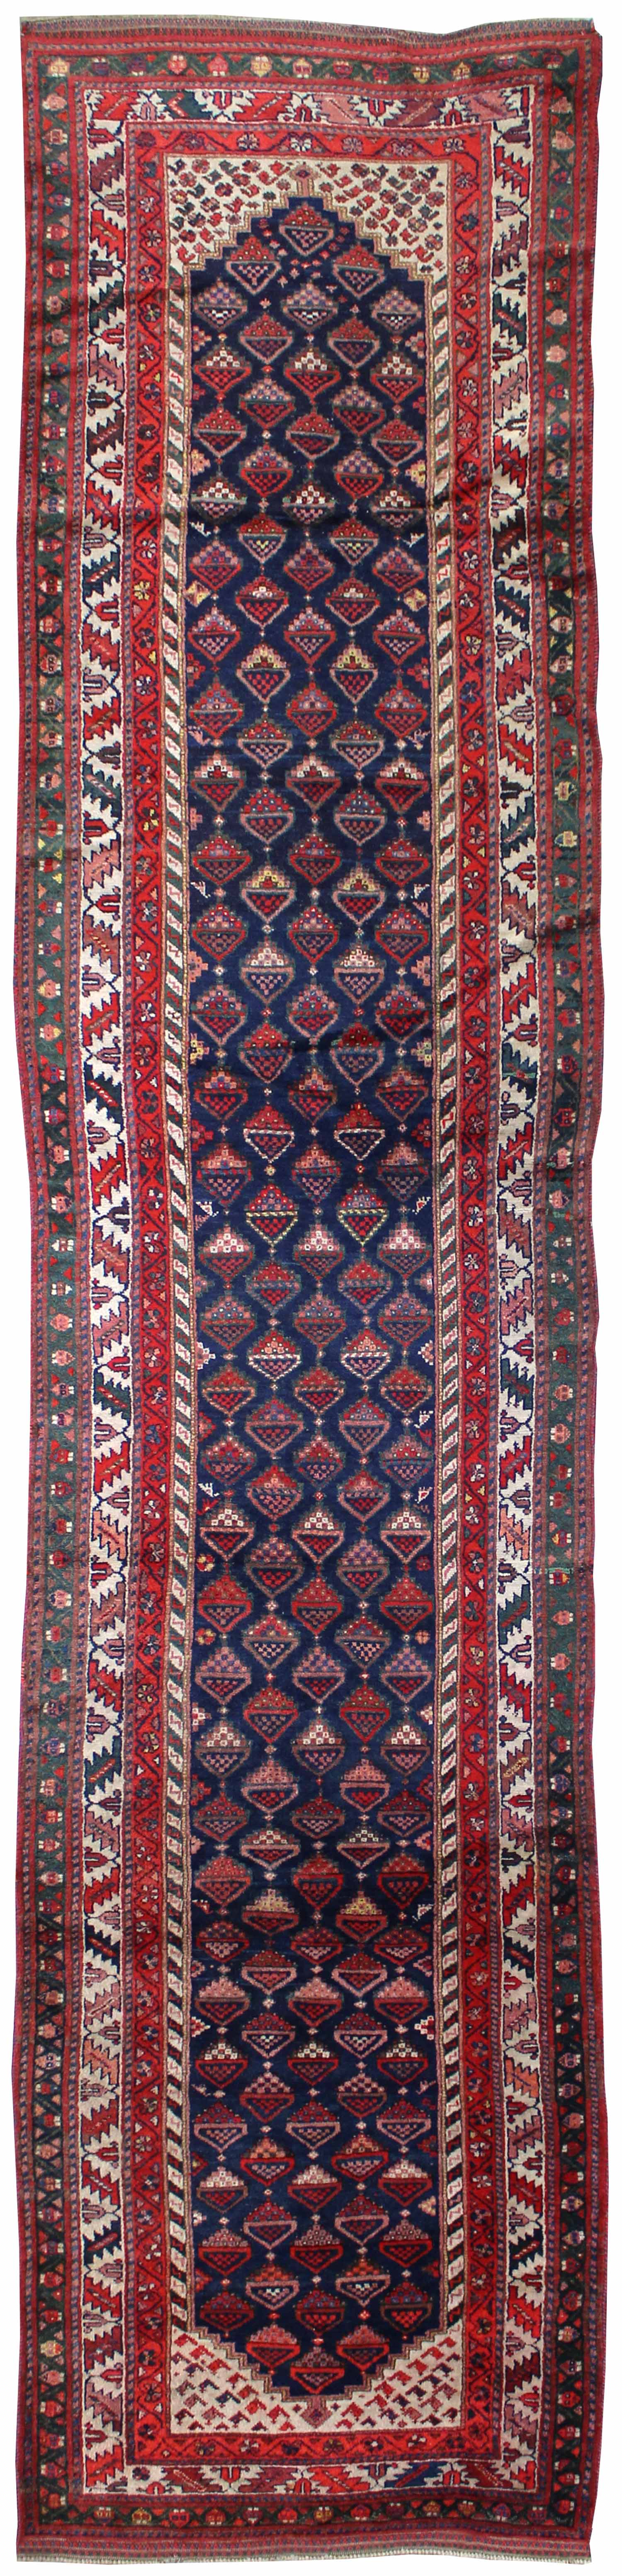 Antique Afshar Handwoven Tribal Rug